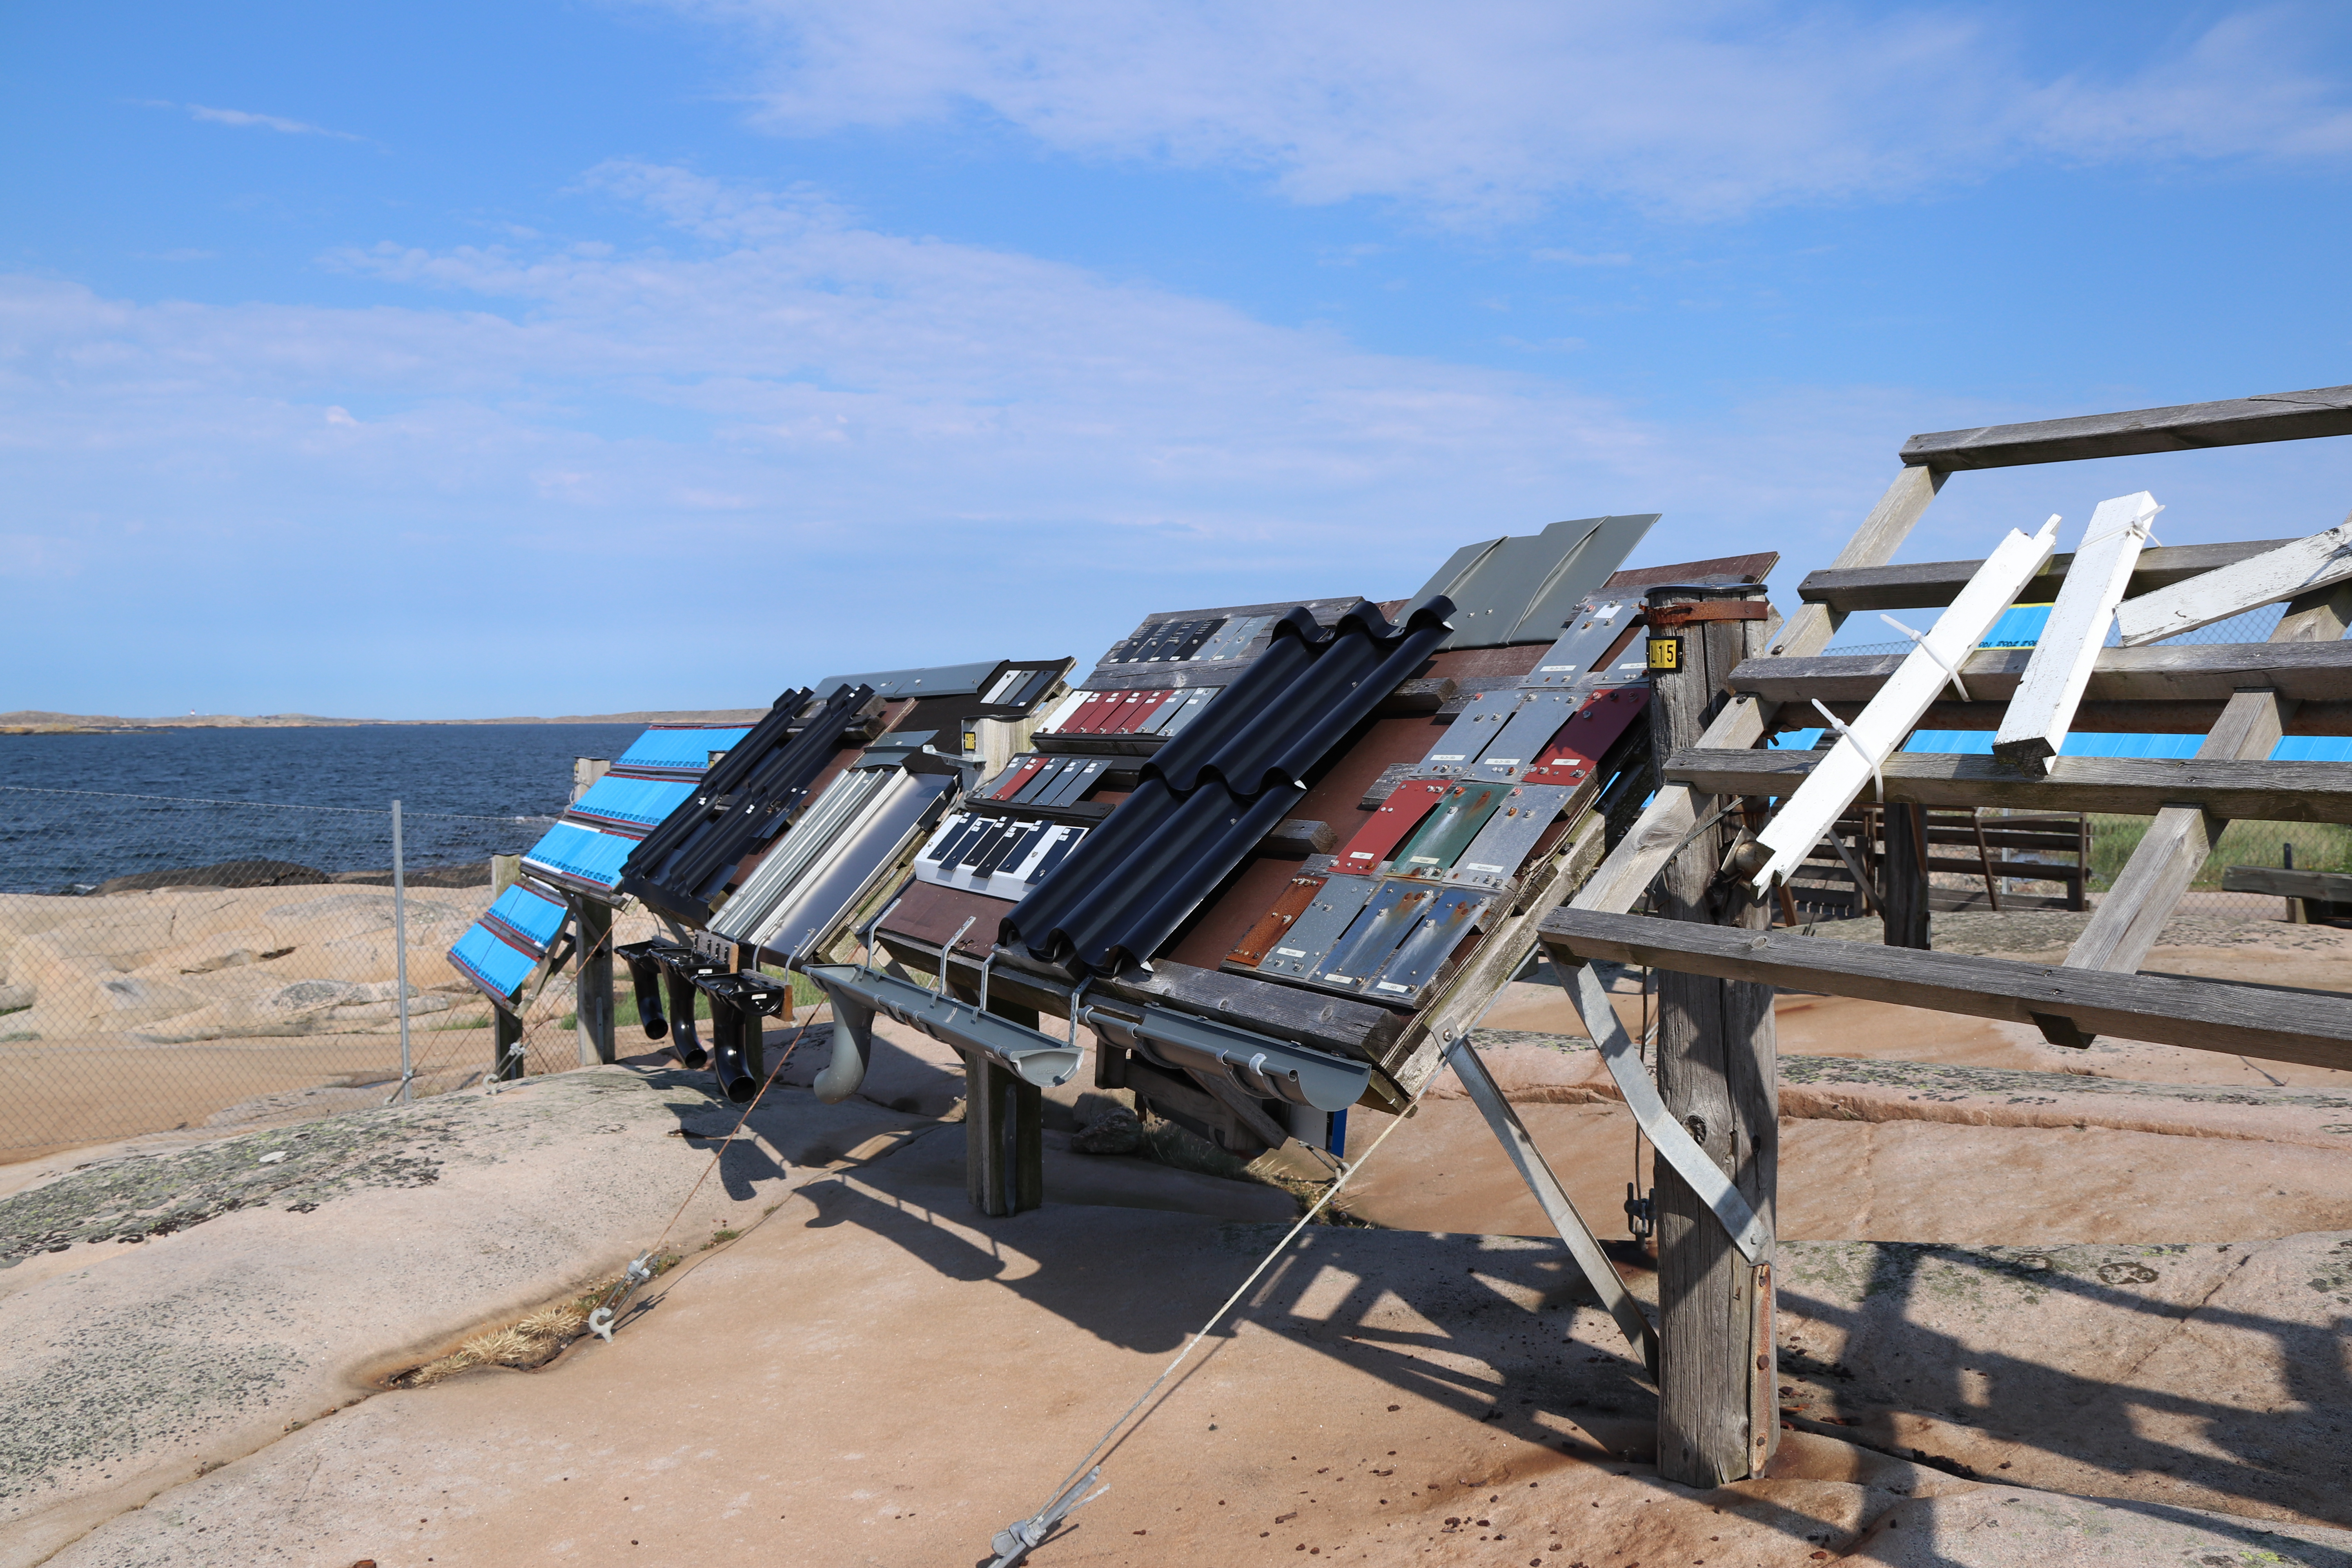 40-ка річні випробування сталі Ruukki на відкритому повітрі у жорстких умовах на березі Північного моря – FinnMetal